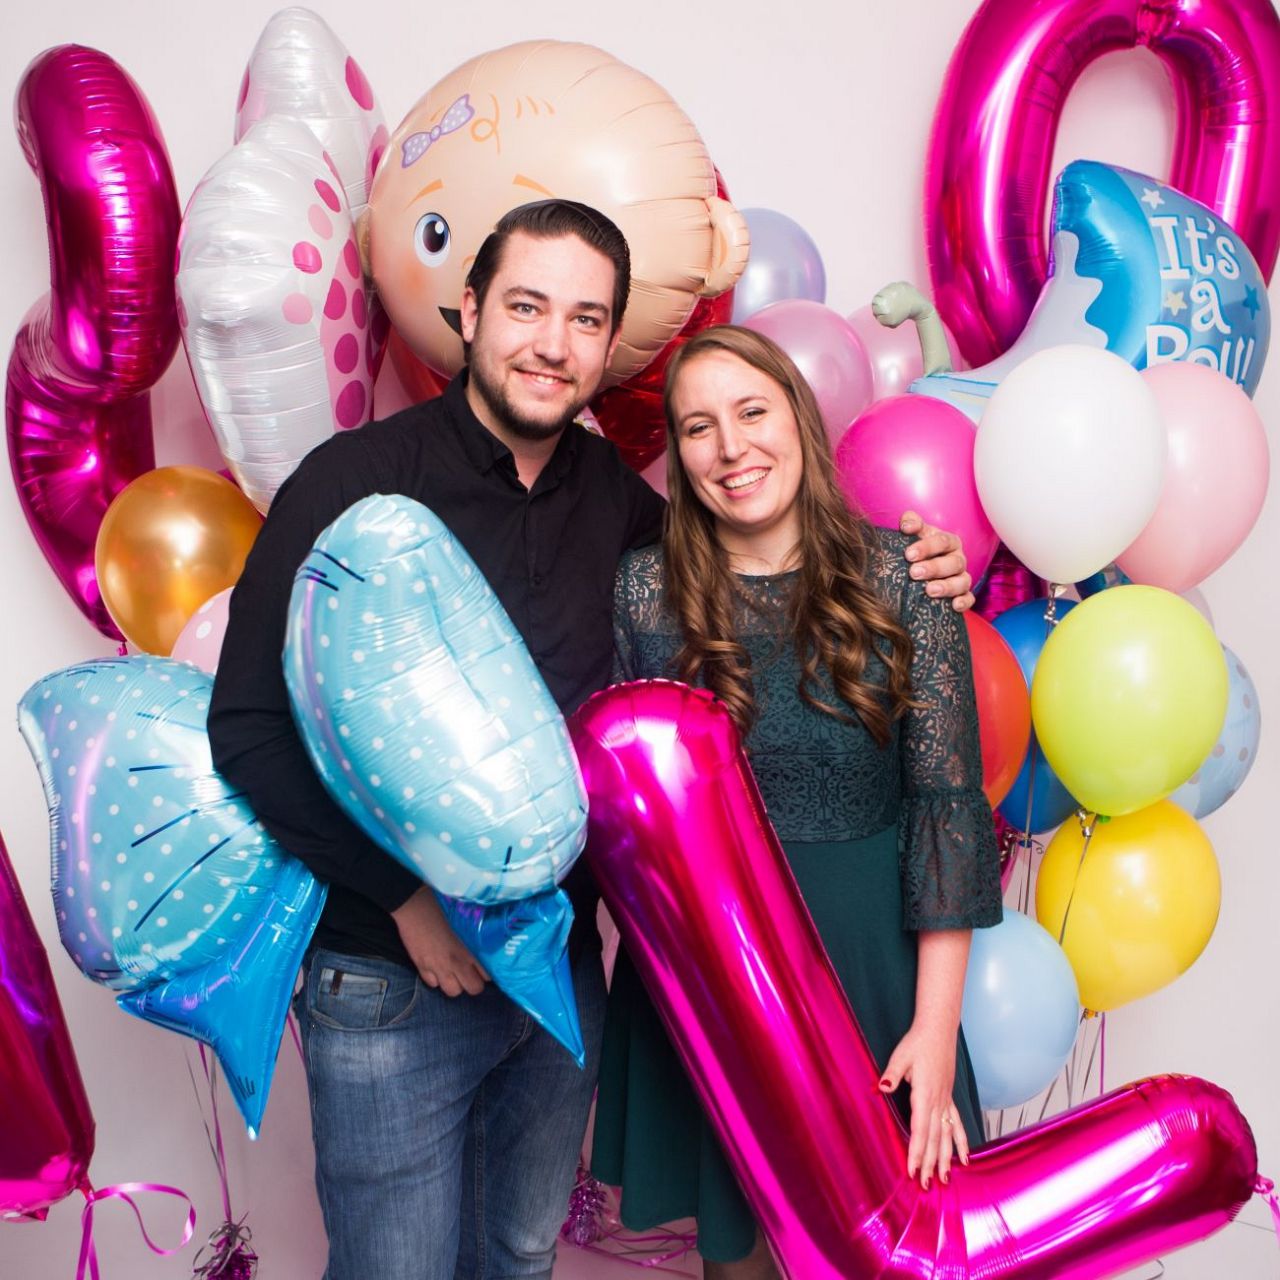 Ballonnen met zorg voor milieu in nieuwe winkel